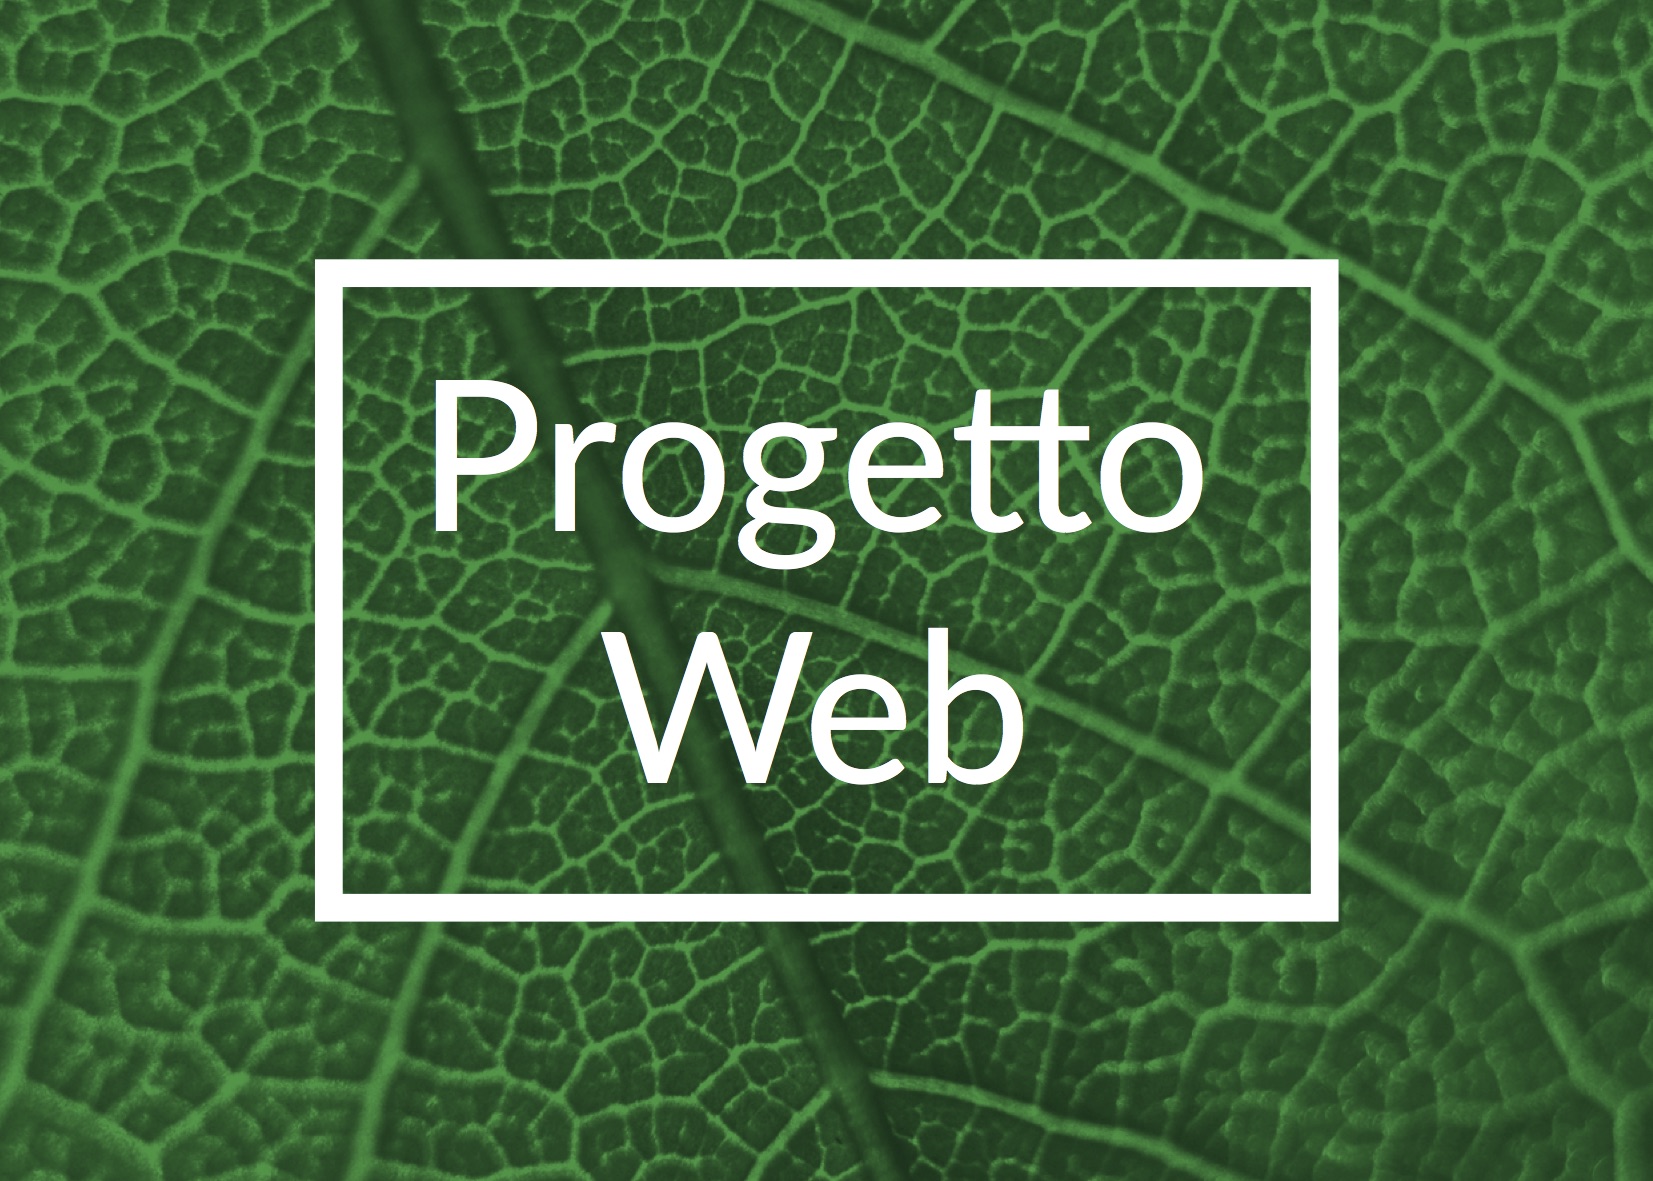 Progetto Web